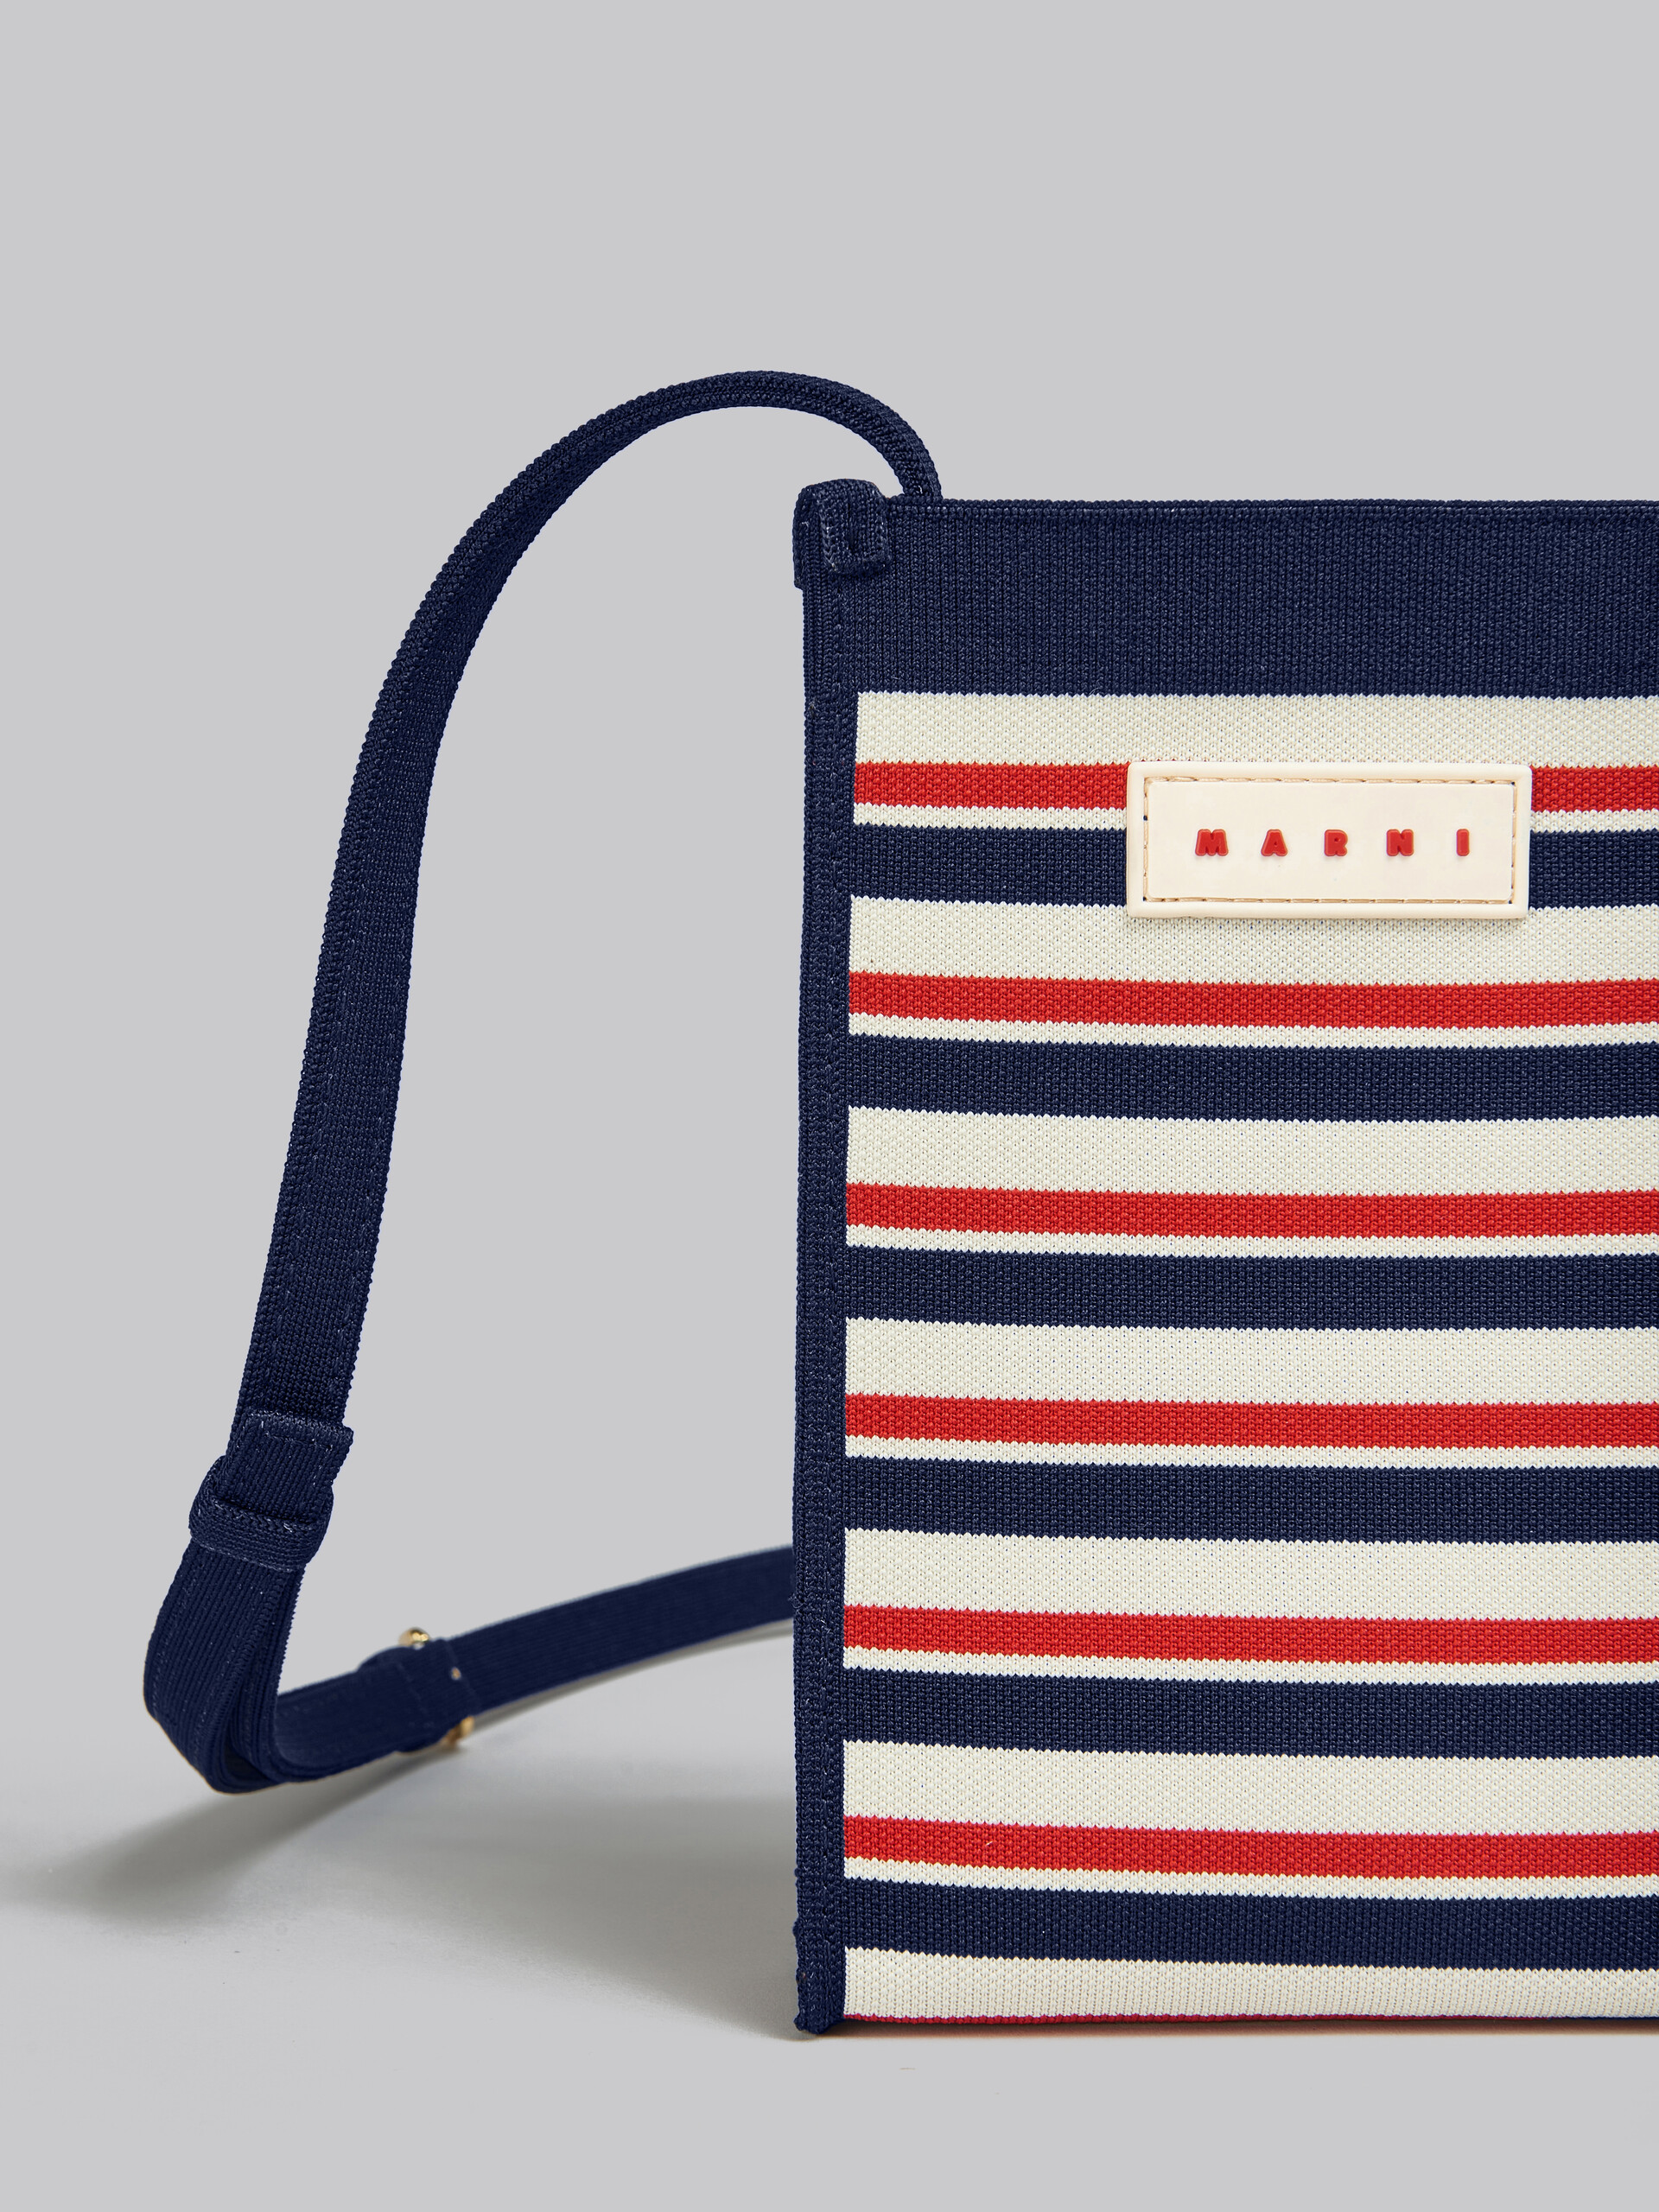 Mini-sac porté épaule en jacquard rayé bleu marine, blanc et rouge - Sacs portés épaule - Image 5